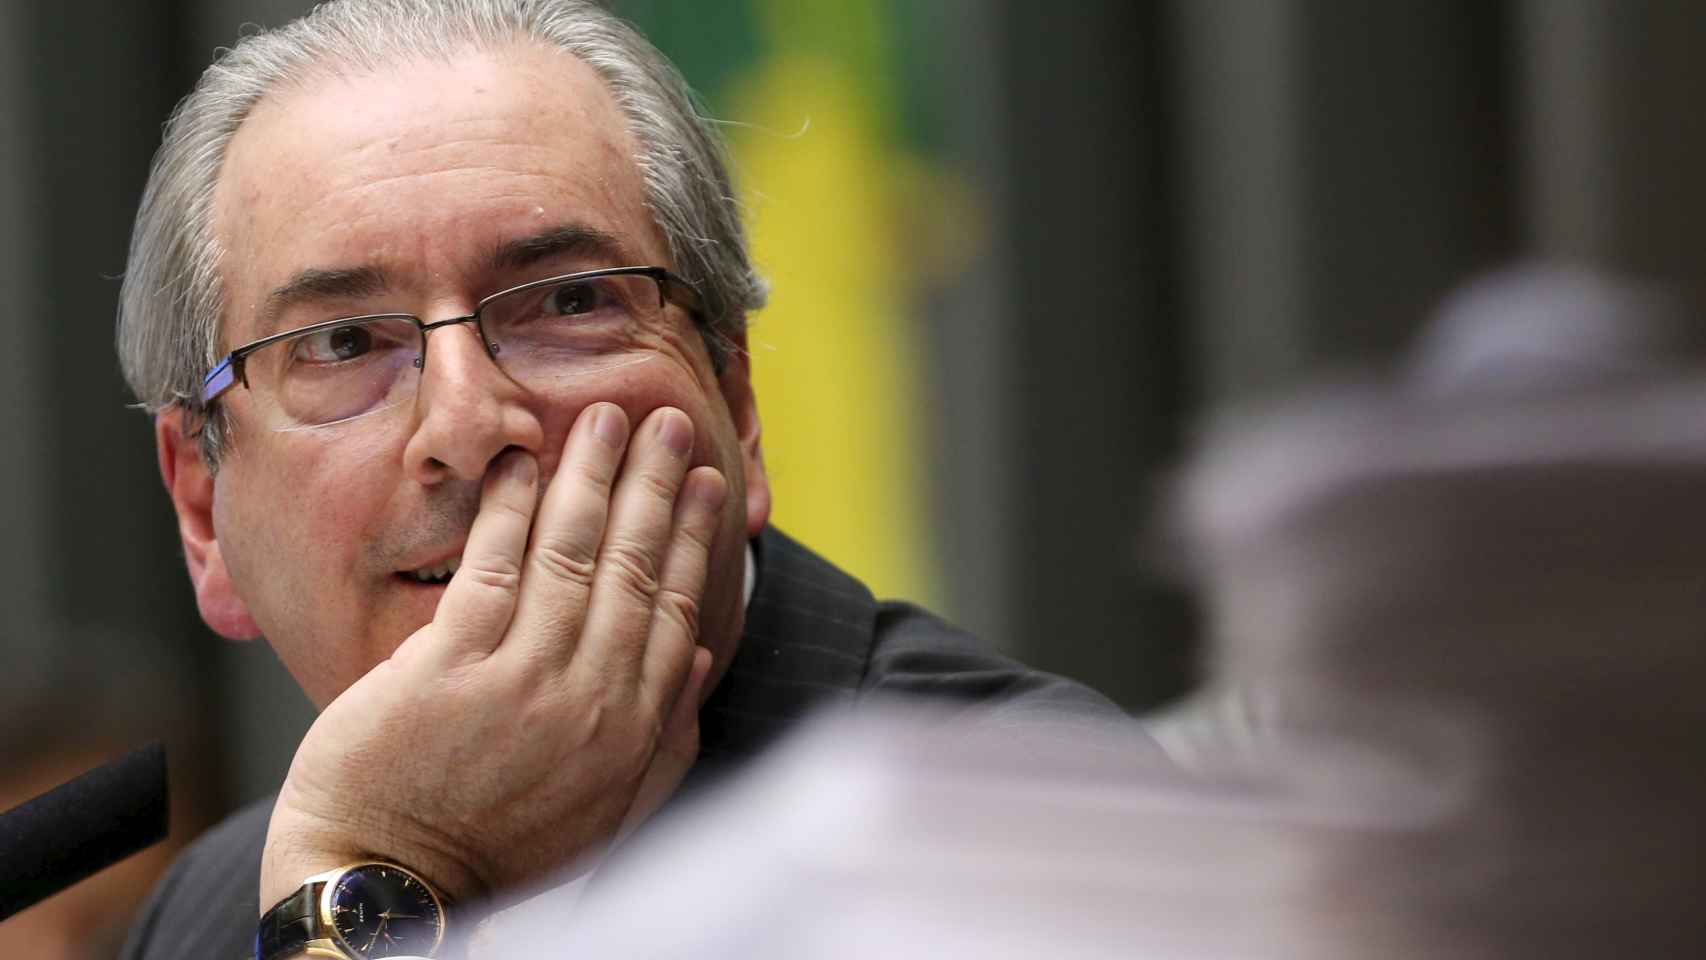 Cunha preside el Congreso brasileño y es enemigo público de la presidenta.